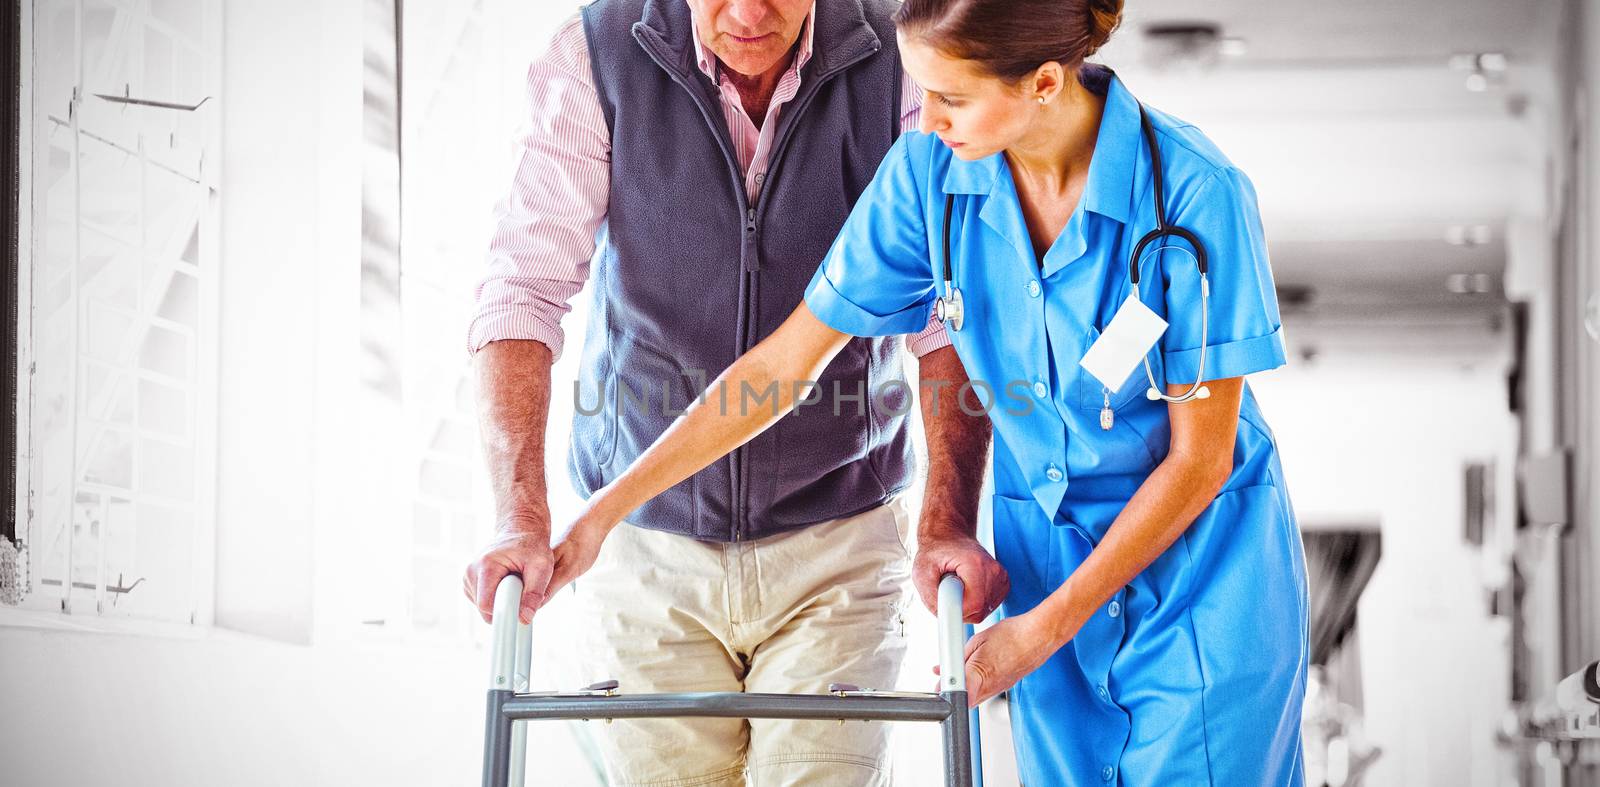 Nurse helping senior man with walking aid by Wavebreakmedia